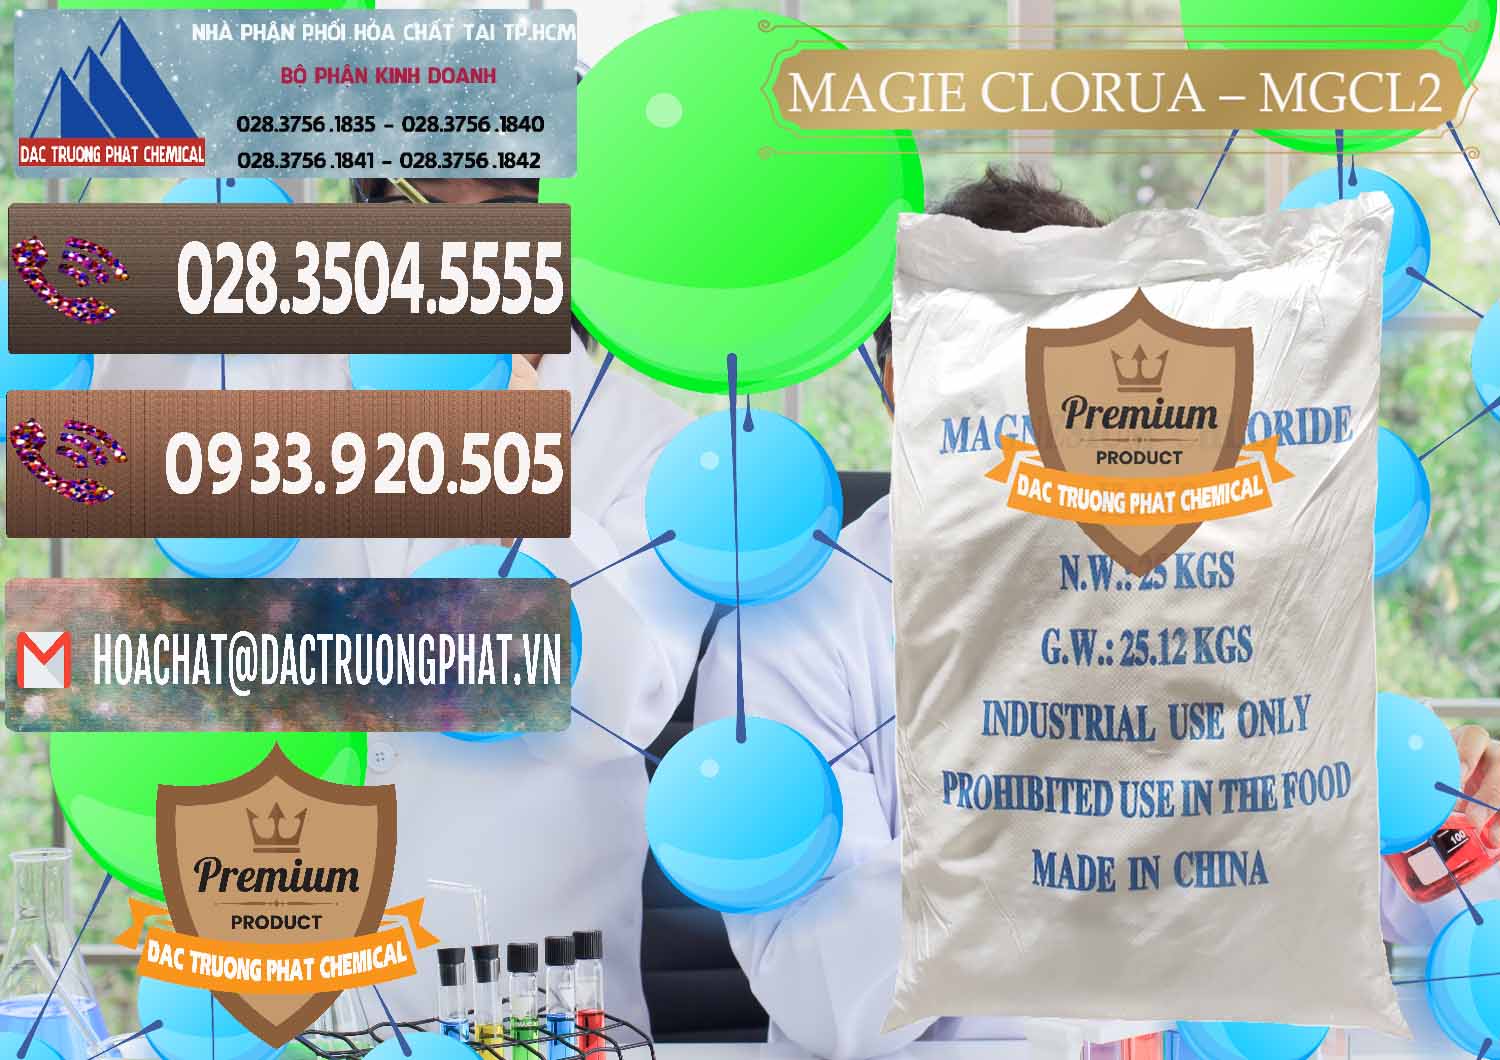 Nhà phân phối - bán Magie Clorua – MGCL2 96% Dạng Vảy Trung Quốc China - 0091 - Nơi chuyên kinh doanh và cung cấp hóa chất tại TP.HCM - hoachatviet.net